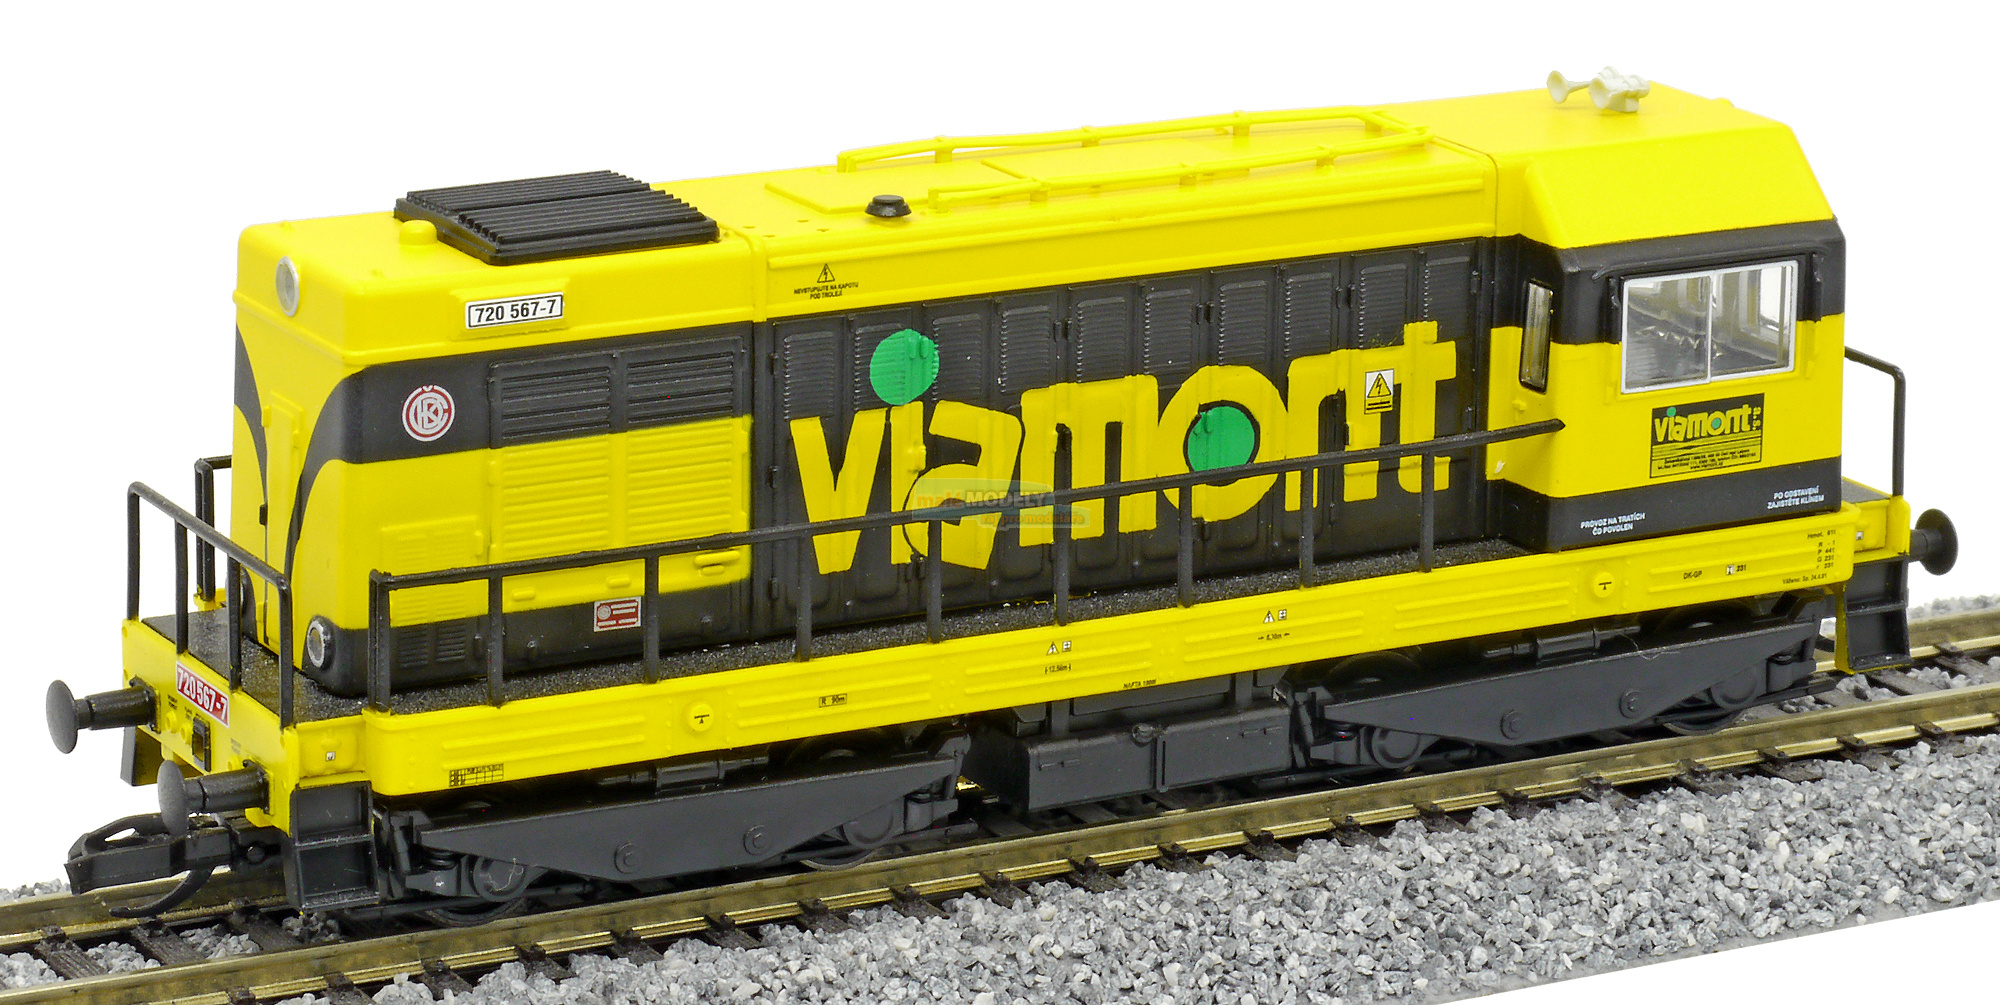 Dieselelektrická BR 720 604 Viamont